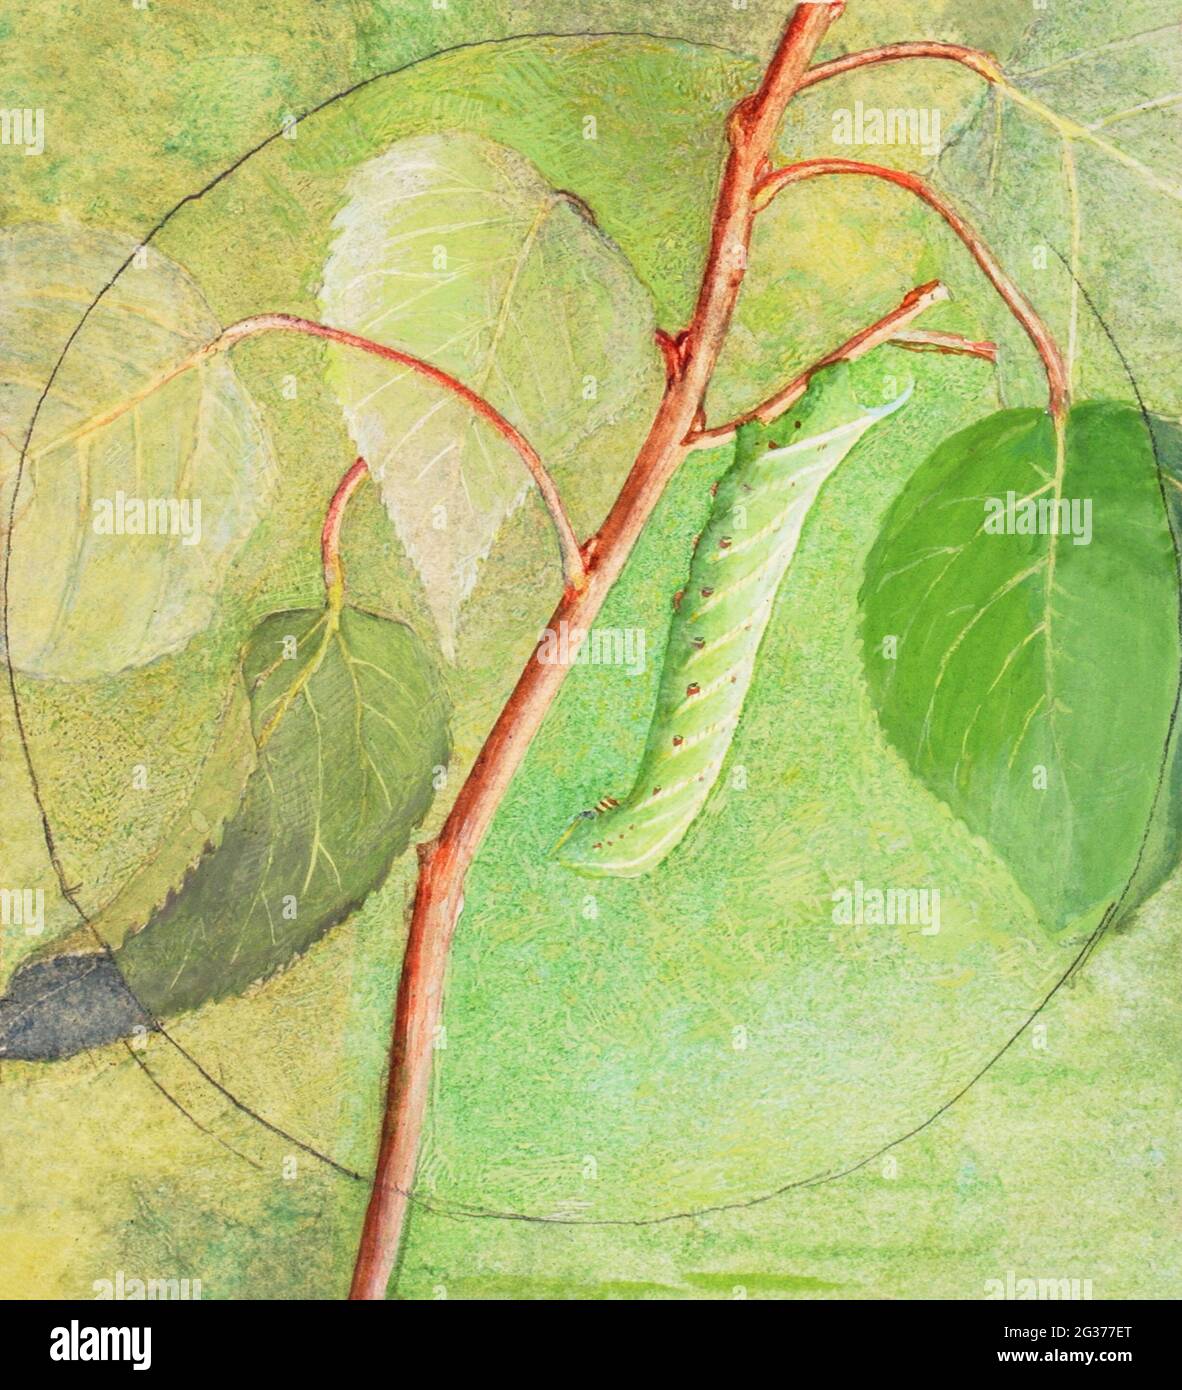 Sphinx Caterpillar, Studie zur Buchverdeckung in der Animal Kingdom Malerei in hoher Auflösung von Abbott Handerson Thayer. Stockfoto